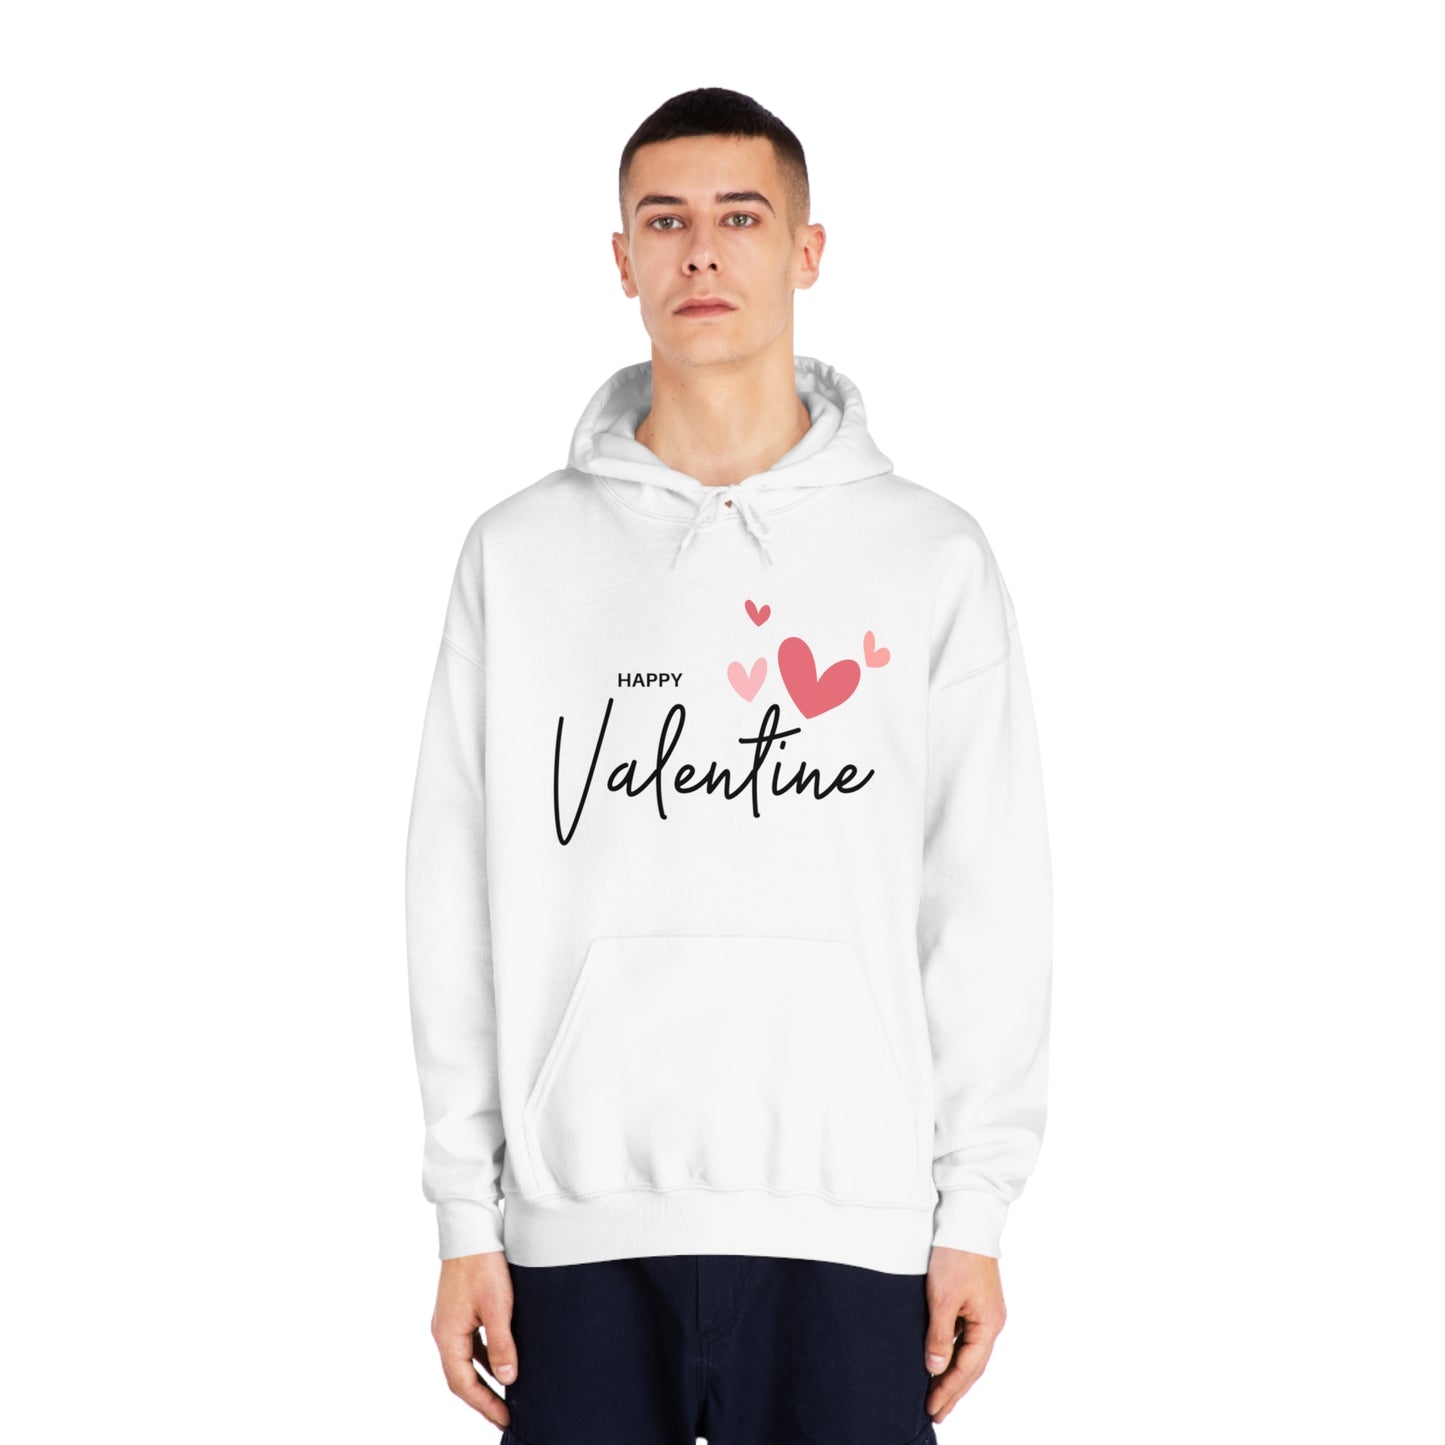 Valentine Sweatshirt, Unisex DryBlend® Hooded Sweatshirt with Happy Valentine Print